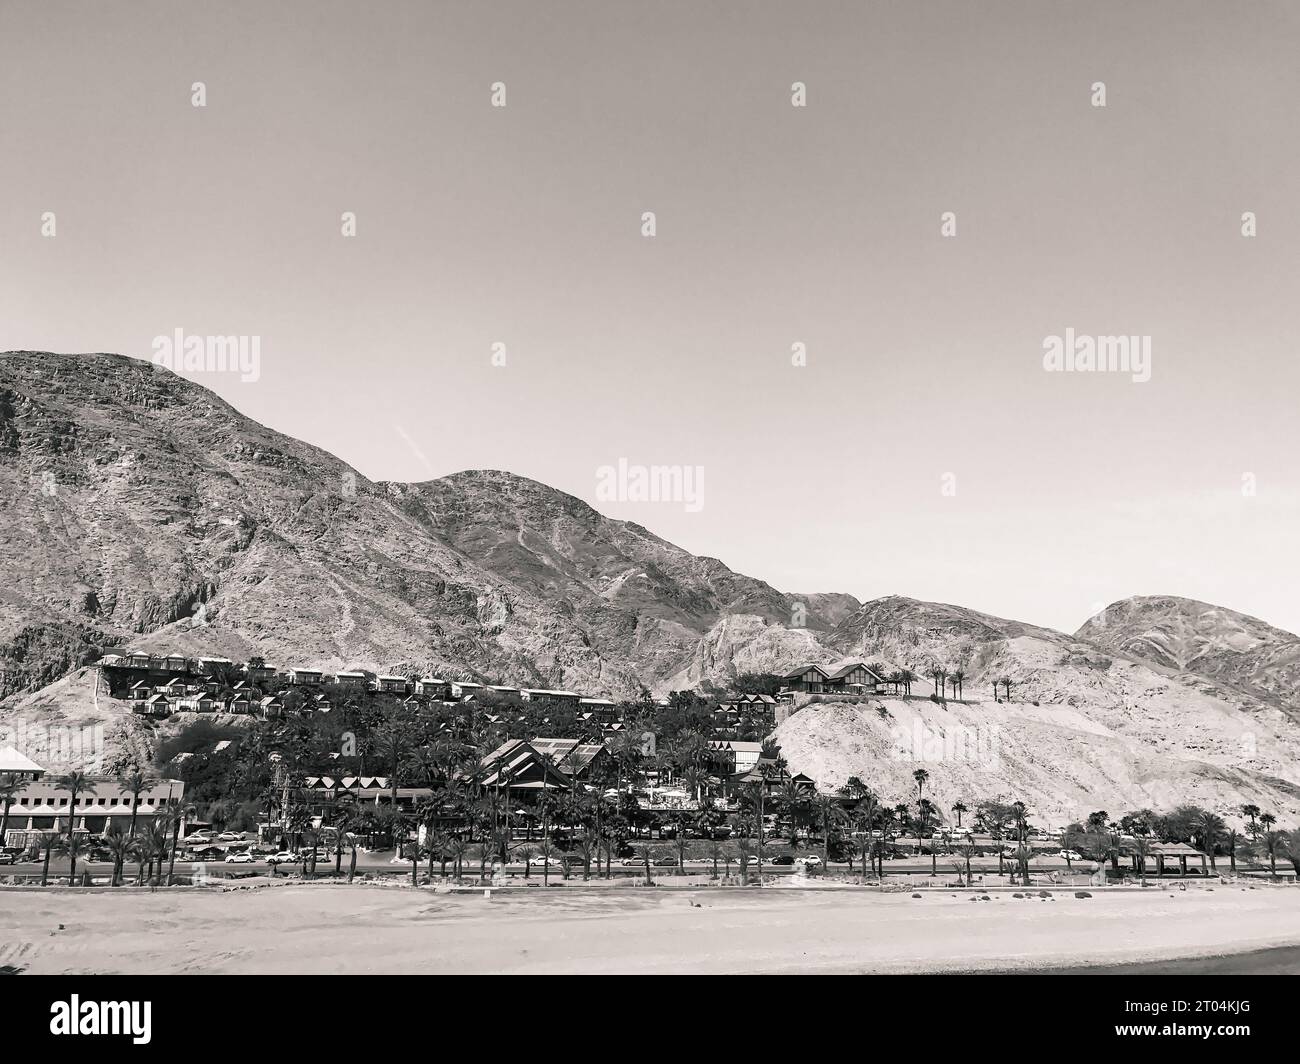 Coche: Orchid Eilat hotel frente a la playa situado en la ladera de la montaña con vistas a la Bahía del Mar Rojo y las Montañas Rojas en blanco y negro Foto de stock